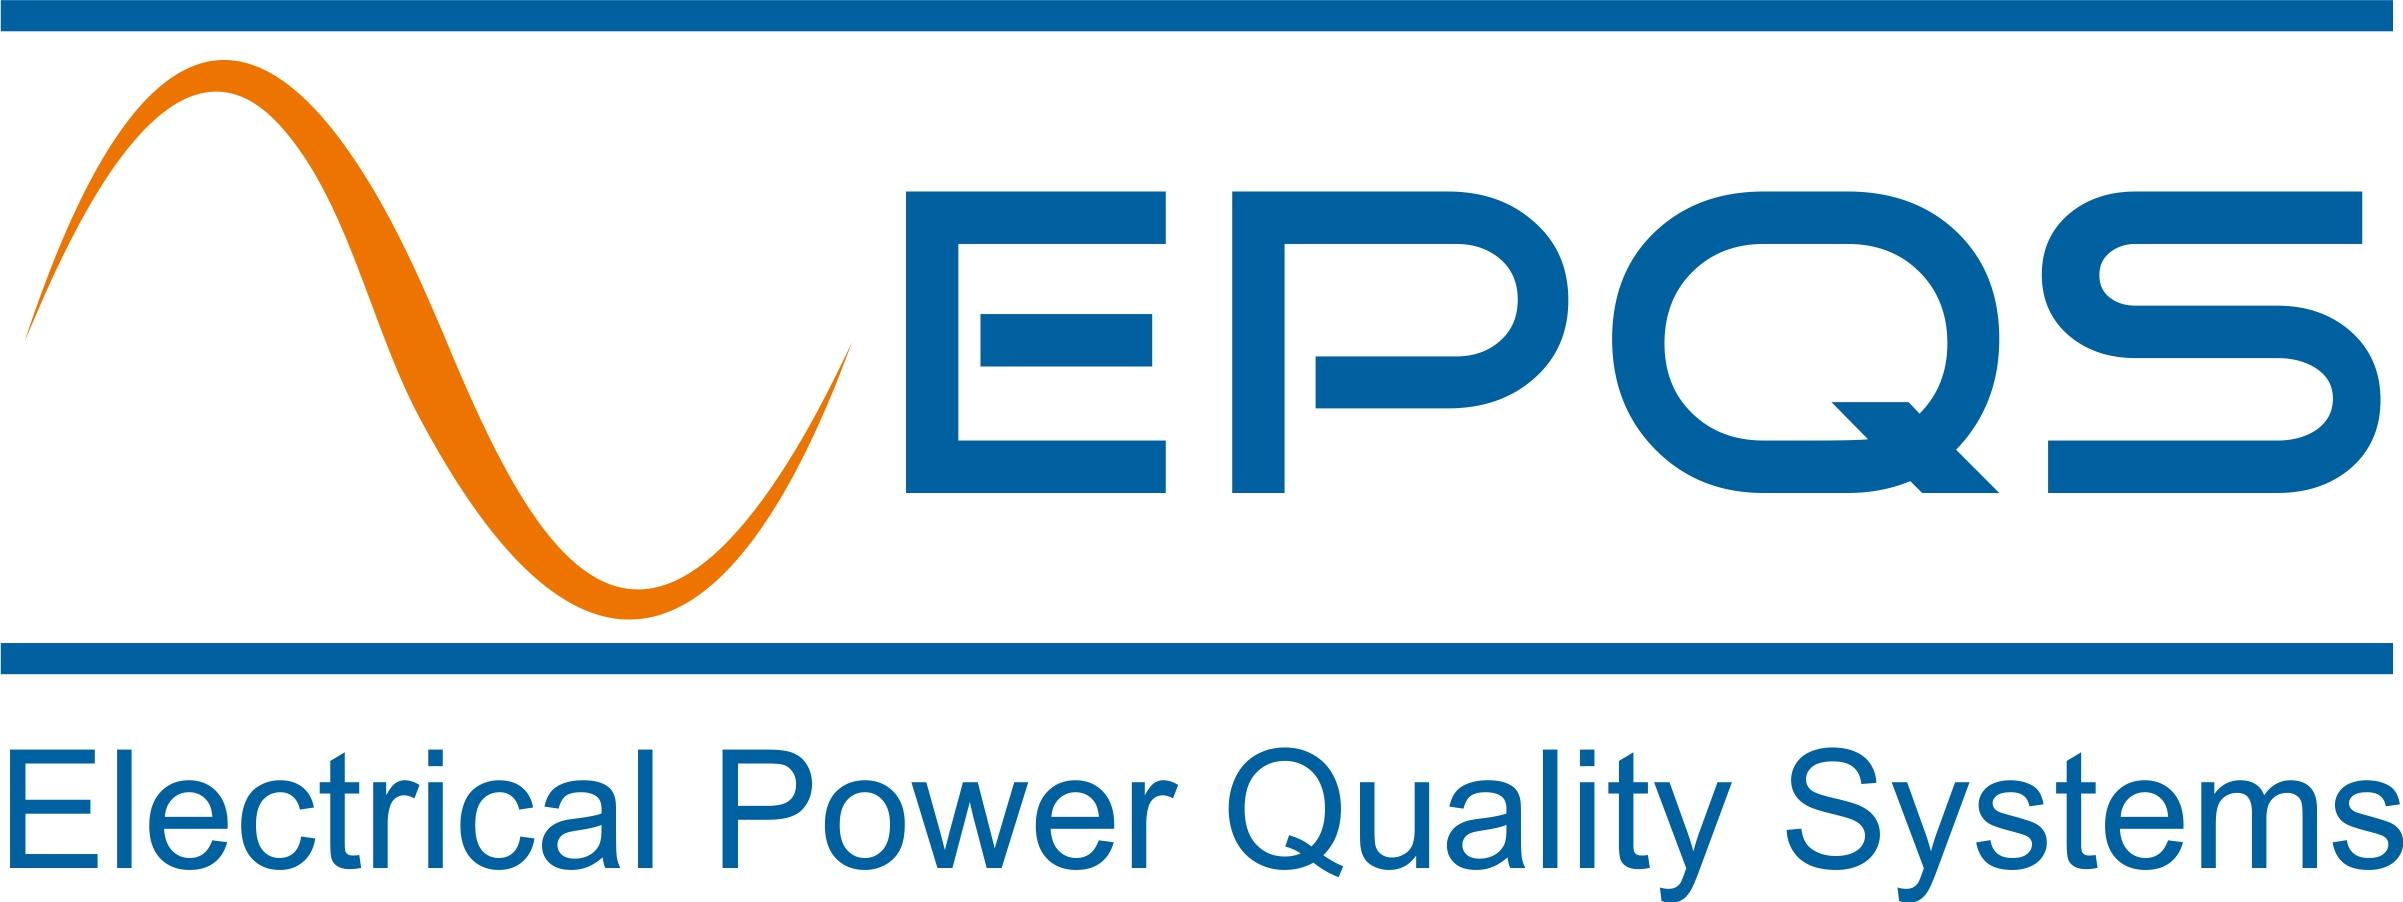 Electrical Power Quality Systems sp. z o.o.